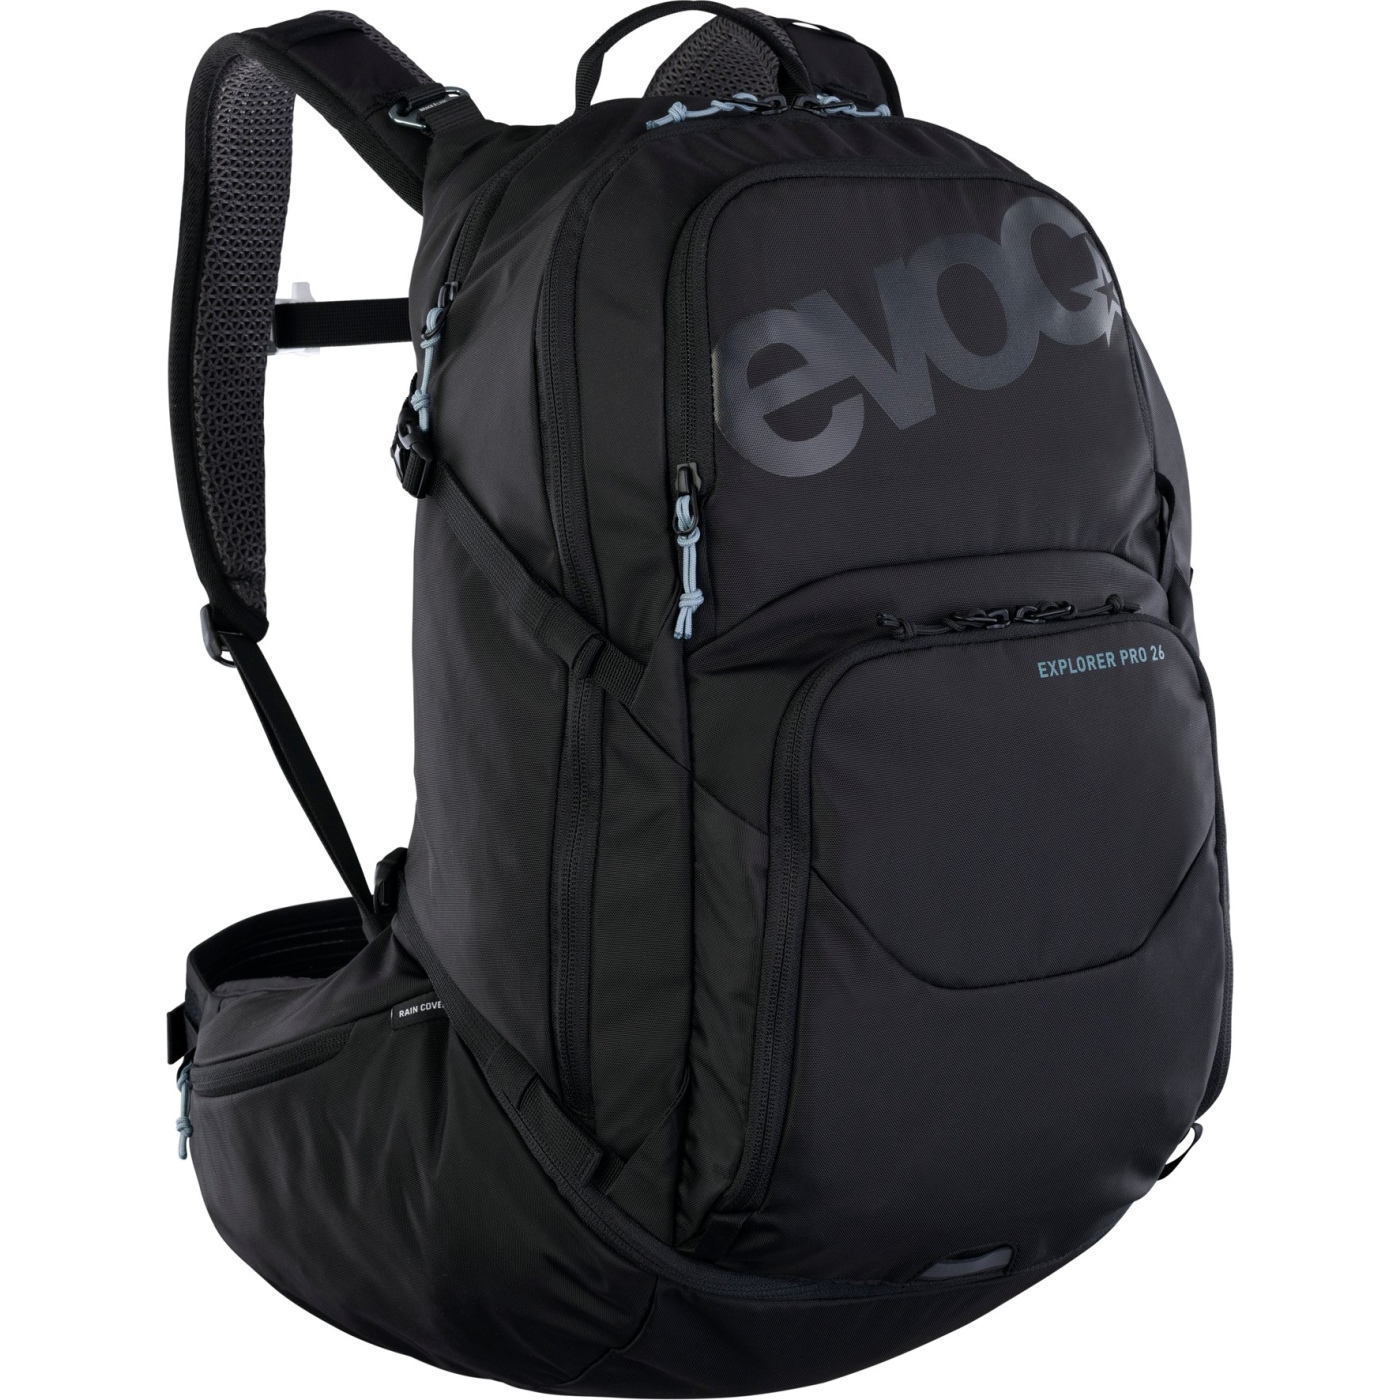 Picture of EVOC Explorer Pro Backpack - 26 L - Black